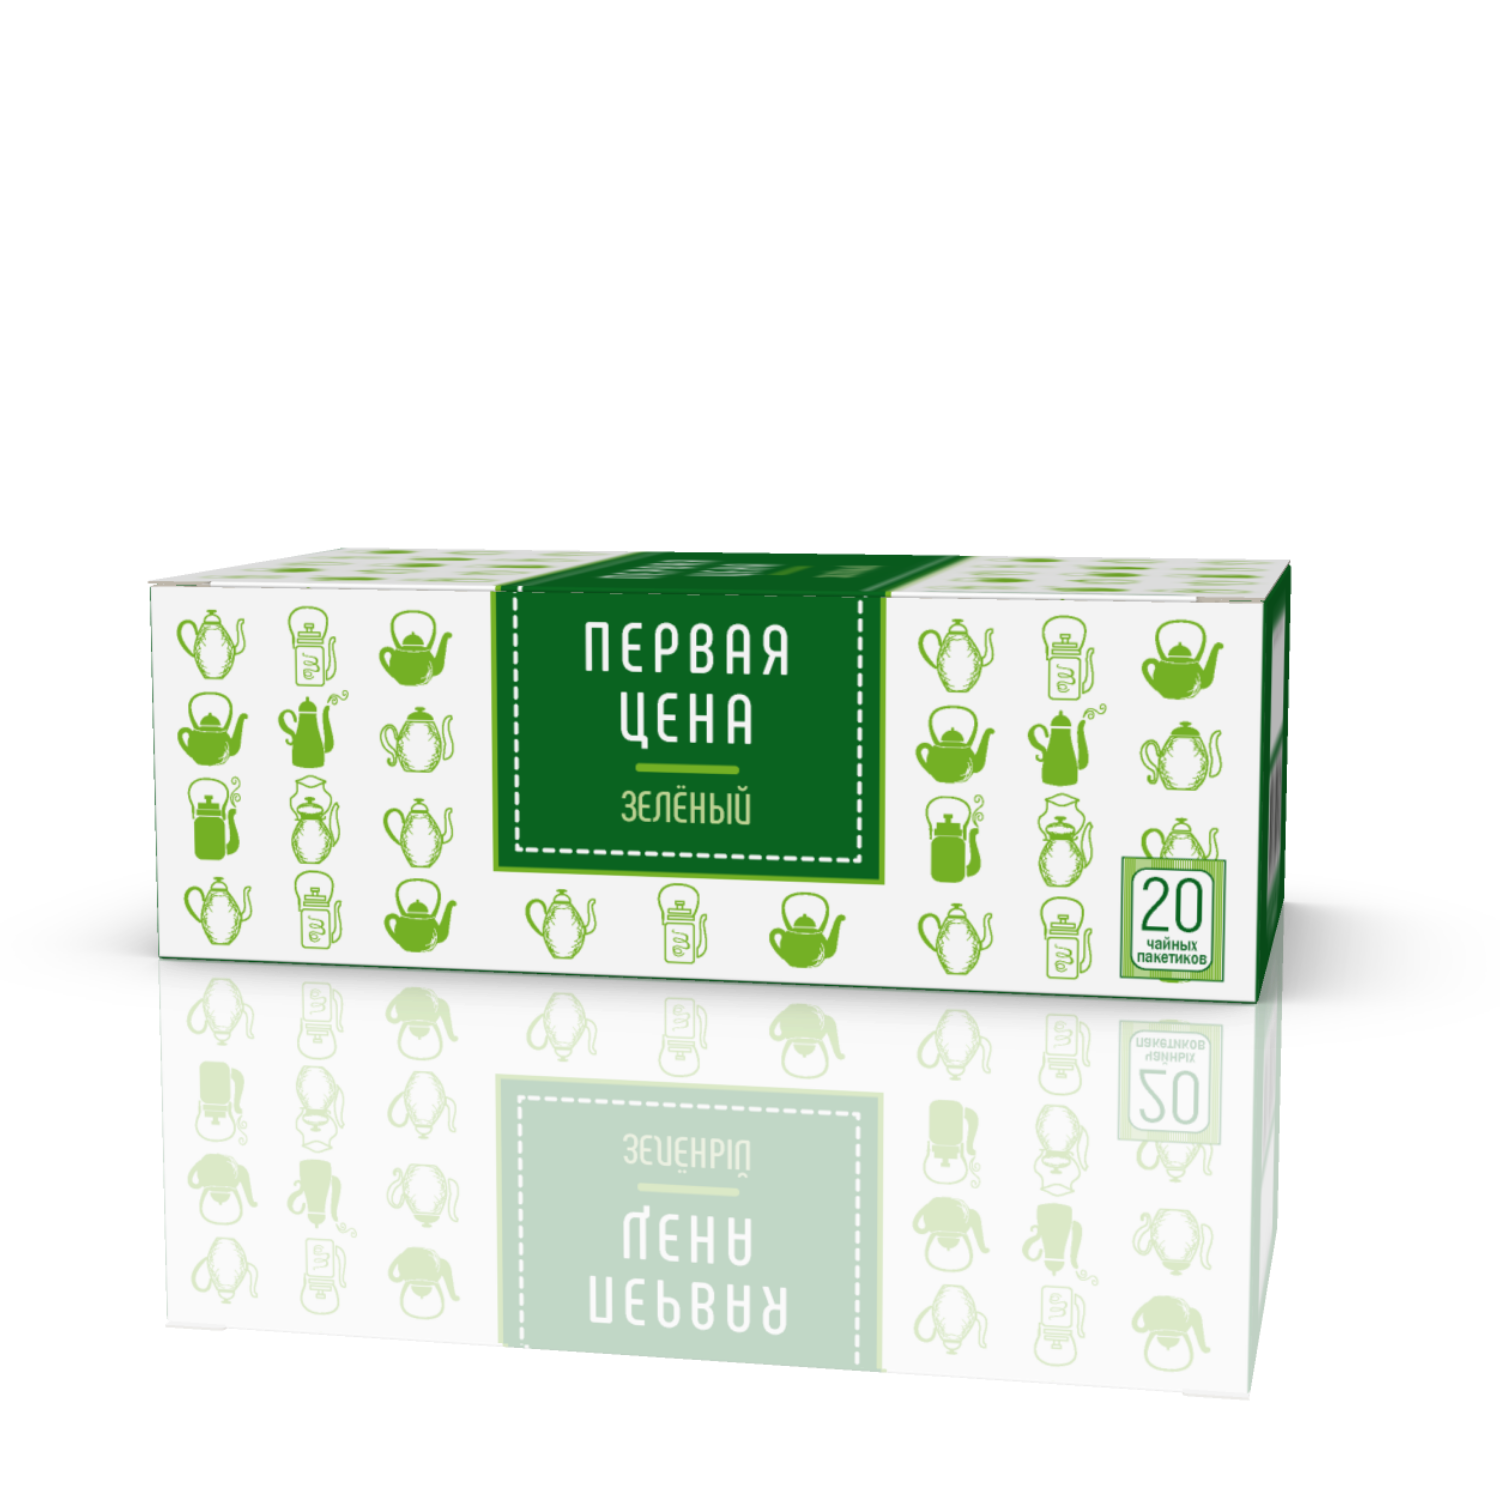 Чай Первая цена зеленый мелкий пакетированный 20*1.2г - фото 1